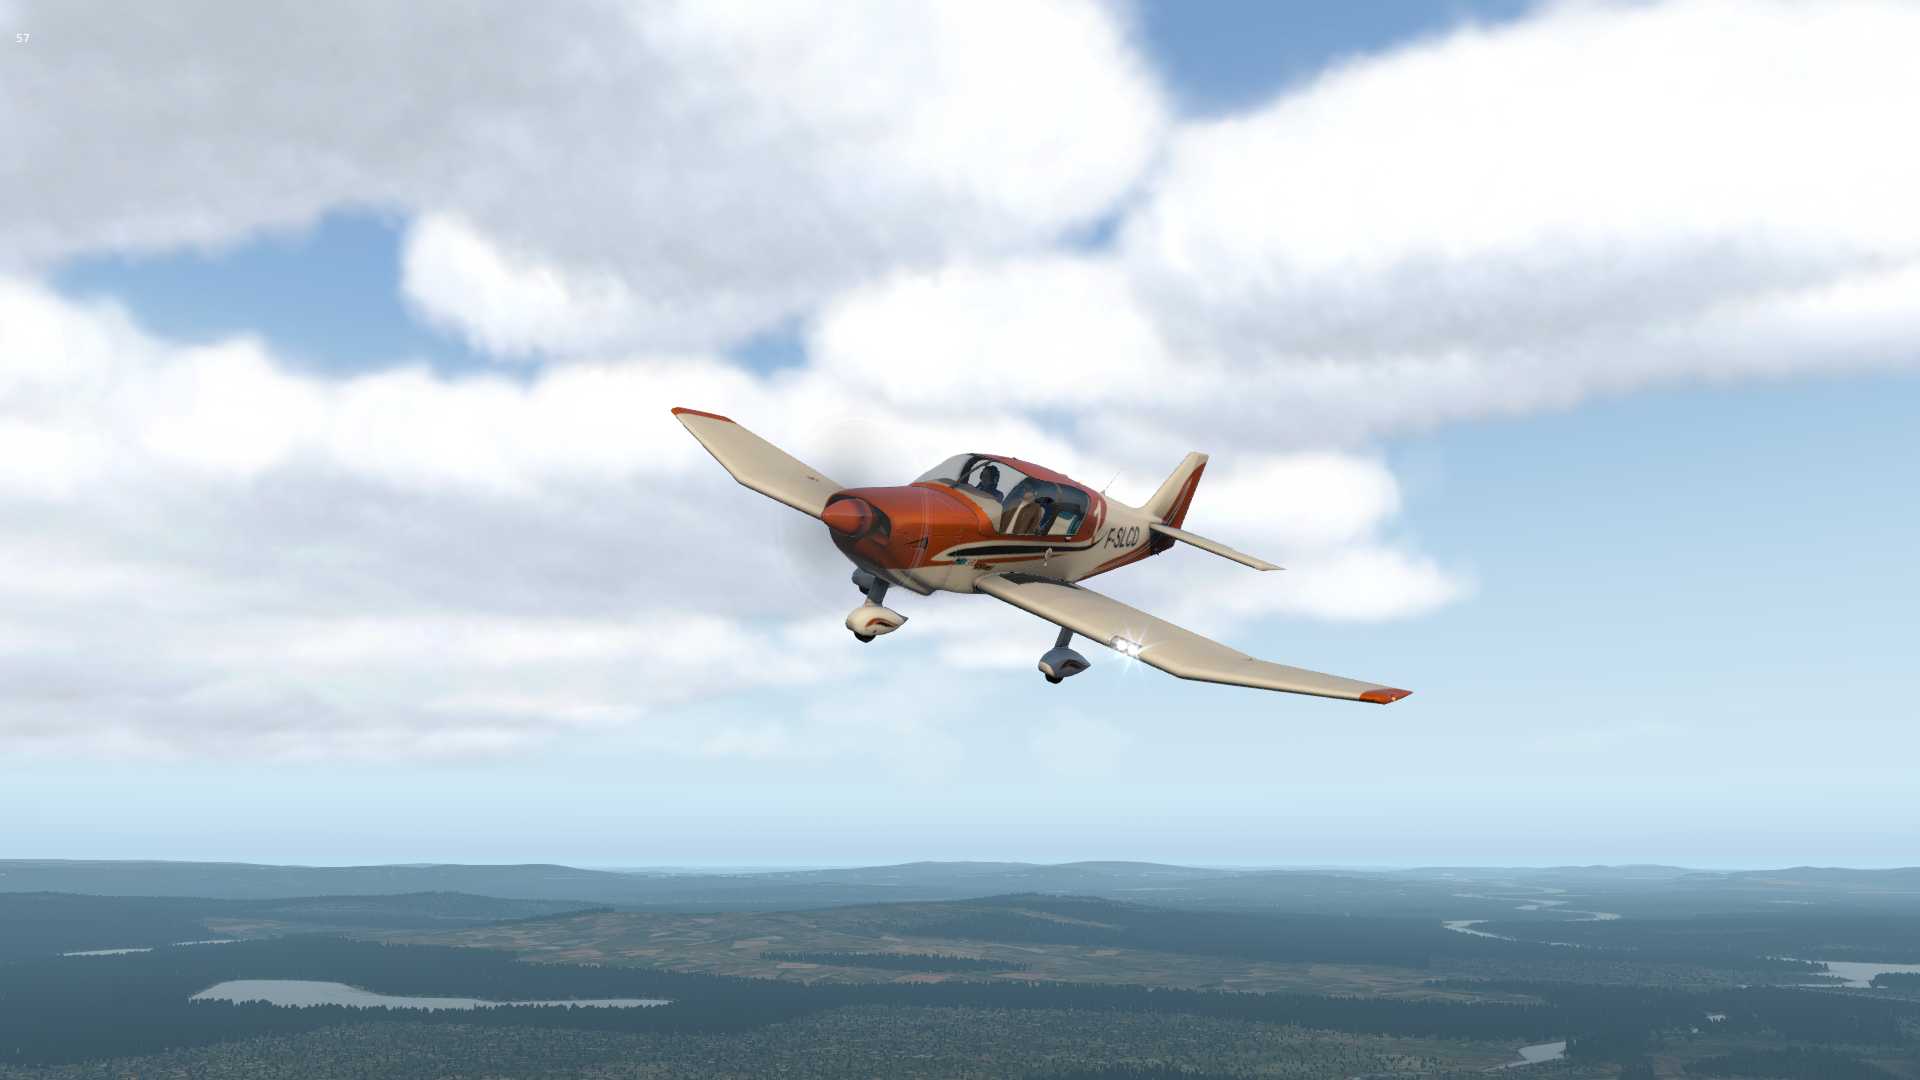 【X-Plane11】Sveg（ESND)上空的Robin-9546 